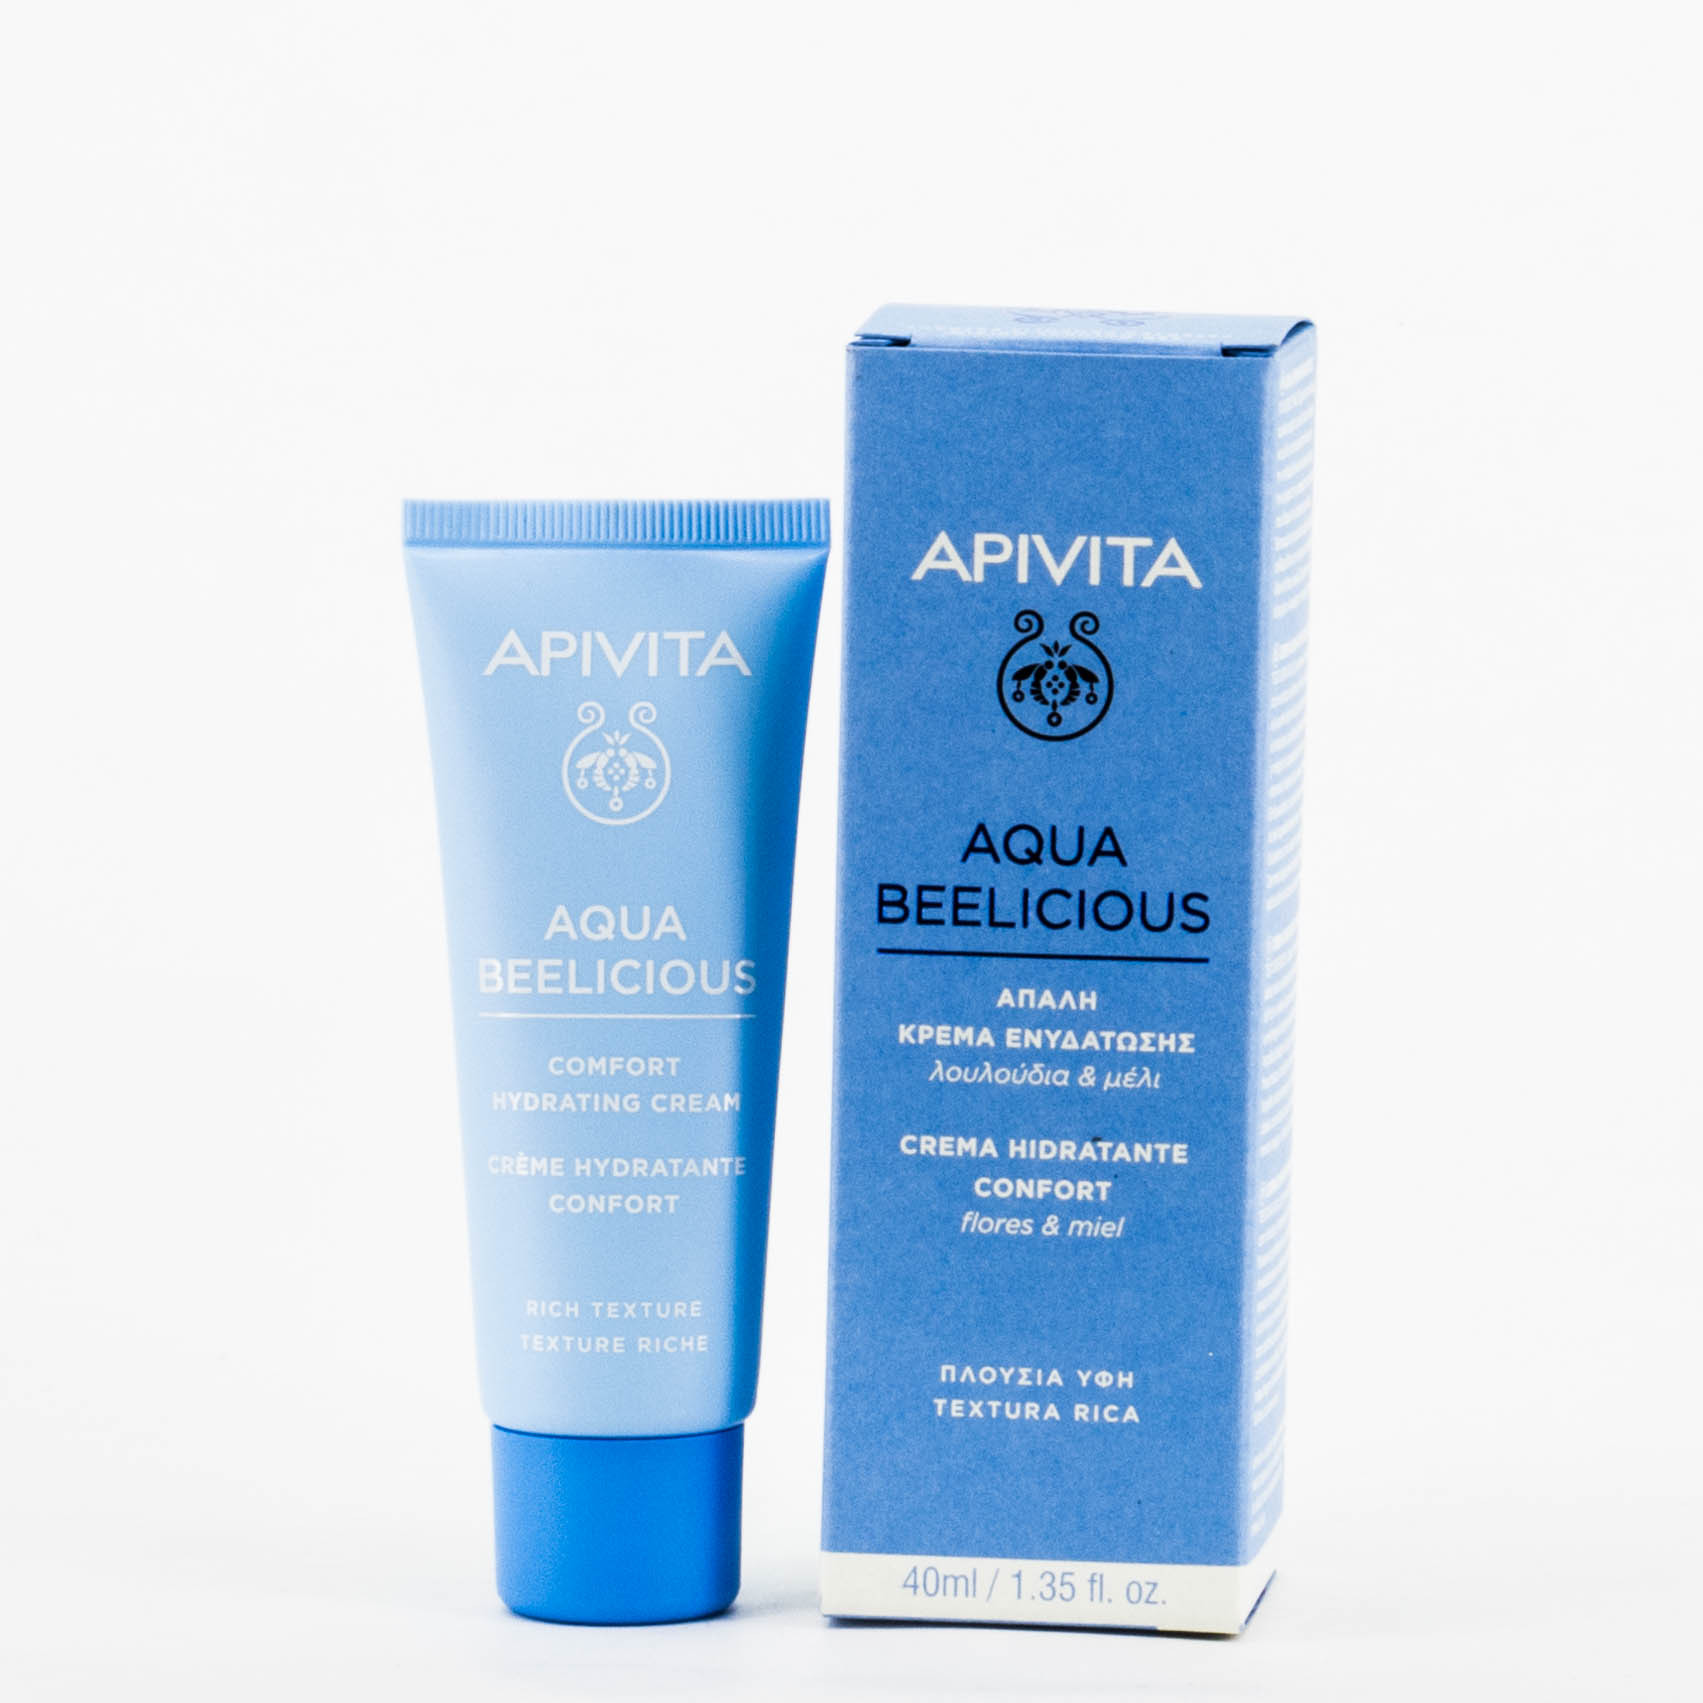 Apivita Aqua Beelicious Crema hidratante confort, 40ml.